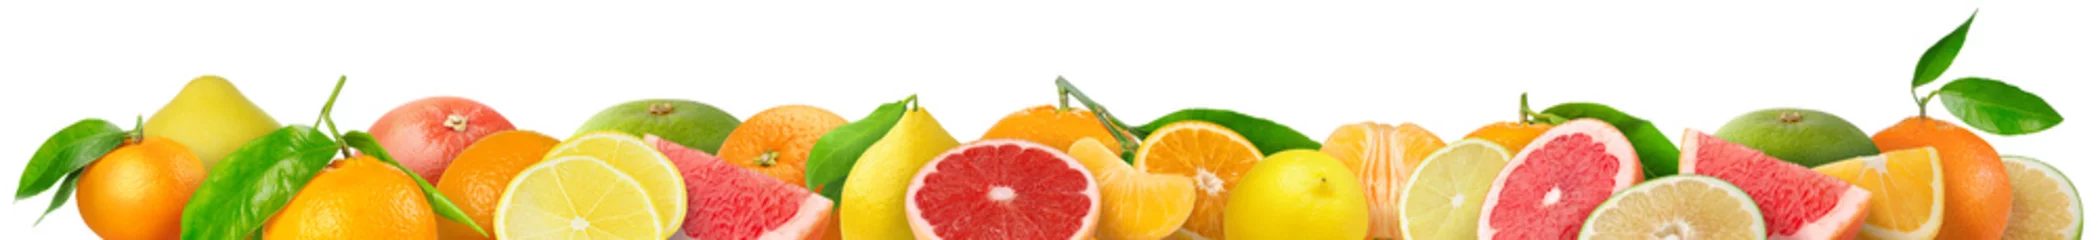 Zelfklevend Fotobehang Gemengde citrusvruchten grens. Stapel sinaasappel, citroen, mandarijn, grapefruit en andere citrusvruchten in horizontale samenstelling geïsoleerd op witte achtergrond © ChaoticDesignStudio